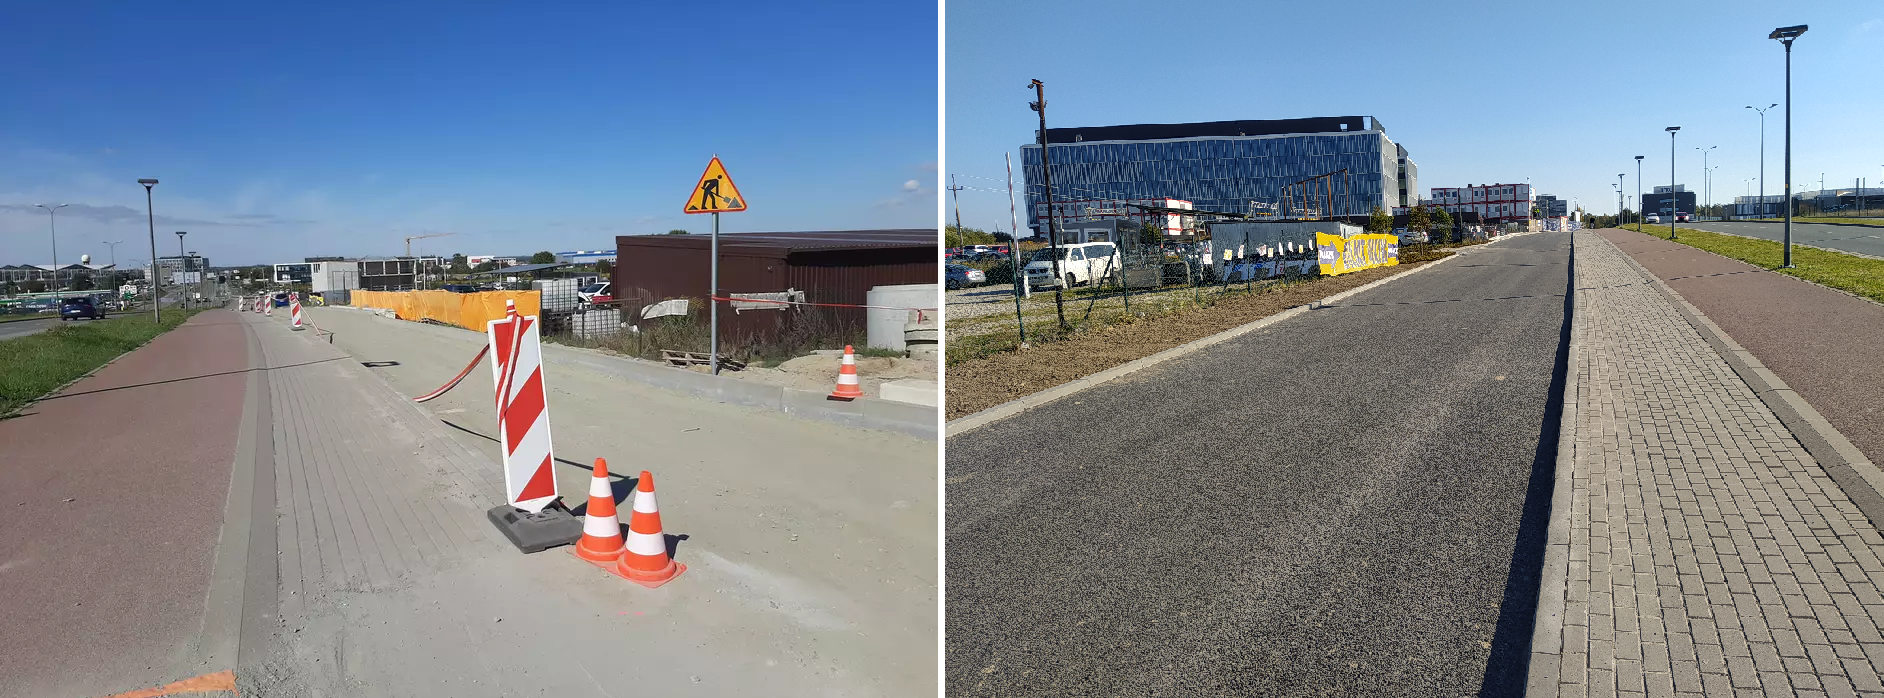 Zdjęcie przedstawia widok przed i po wykonaniu przebudowy drogi serwisowej